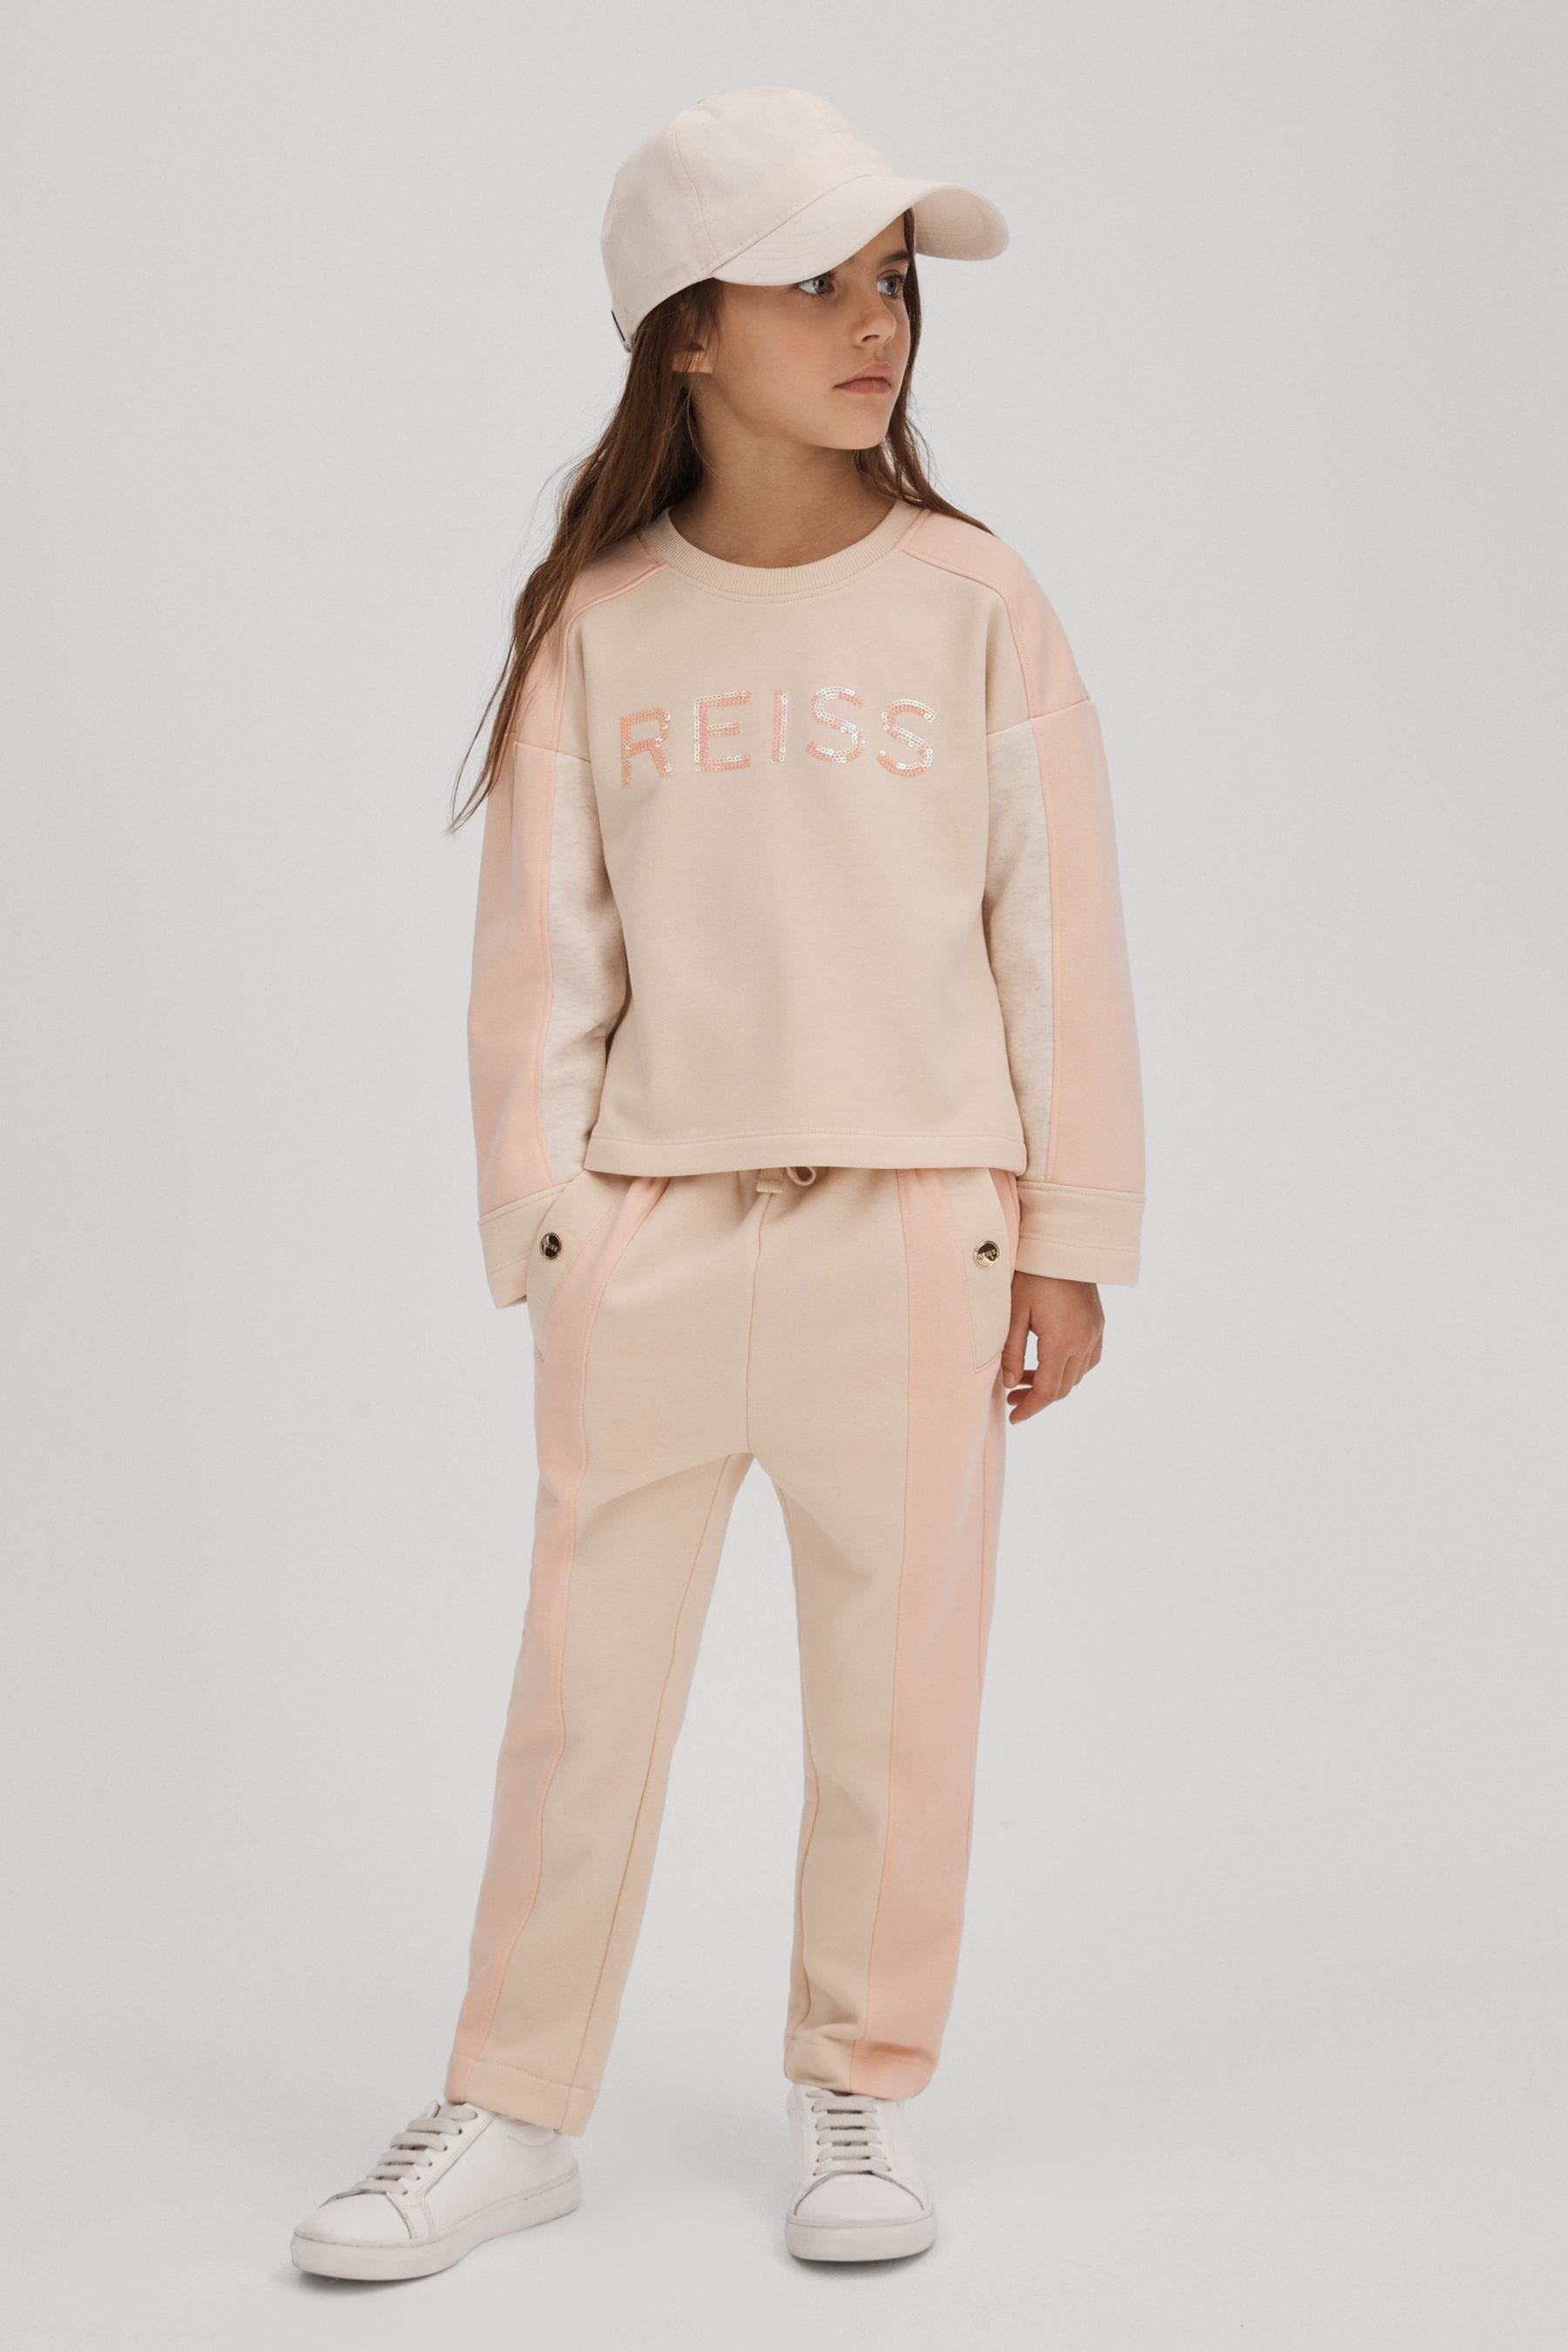 Reiss Kids' Ivy - Pink Senior Cotton Blend Sequin Sweatshirt, 9 - 10 Years